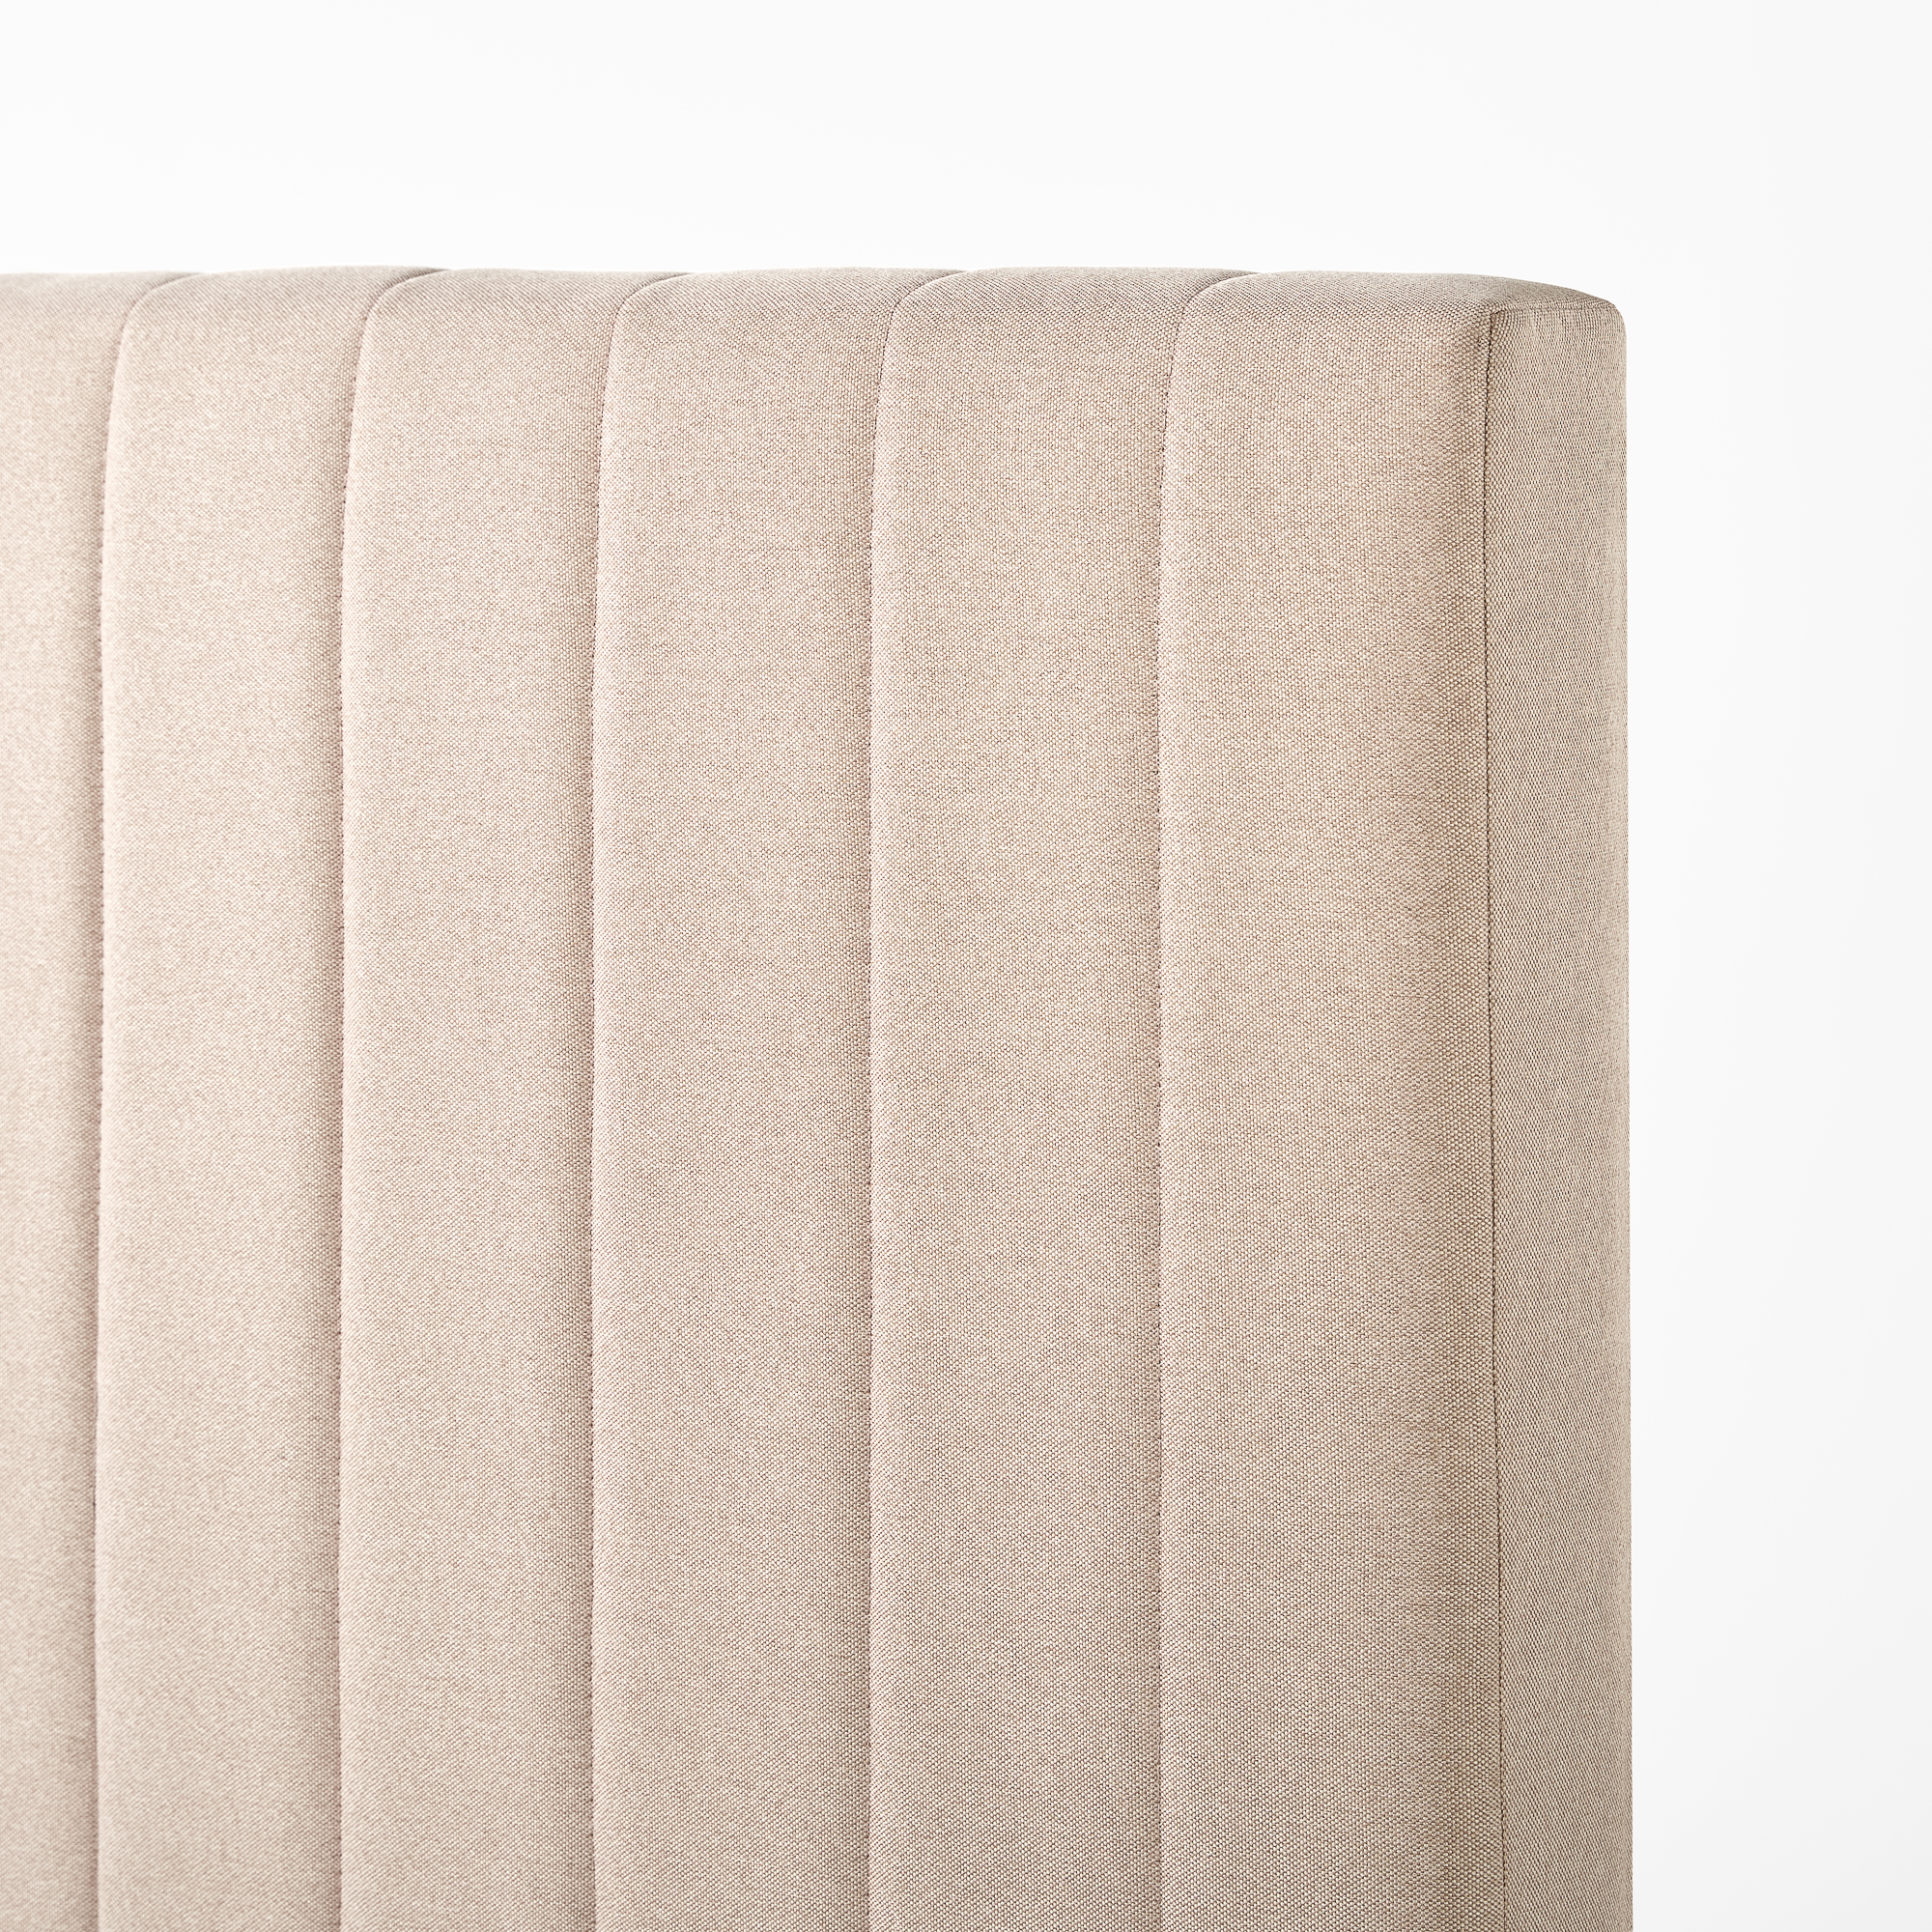 Zinus Debi 51” Upholstered Platform Bed Frame, Full, Beige - image 2 of 9